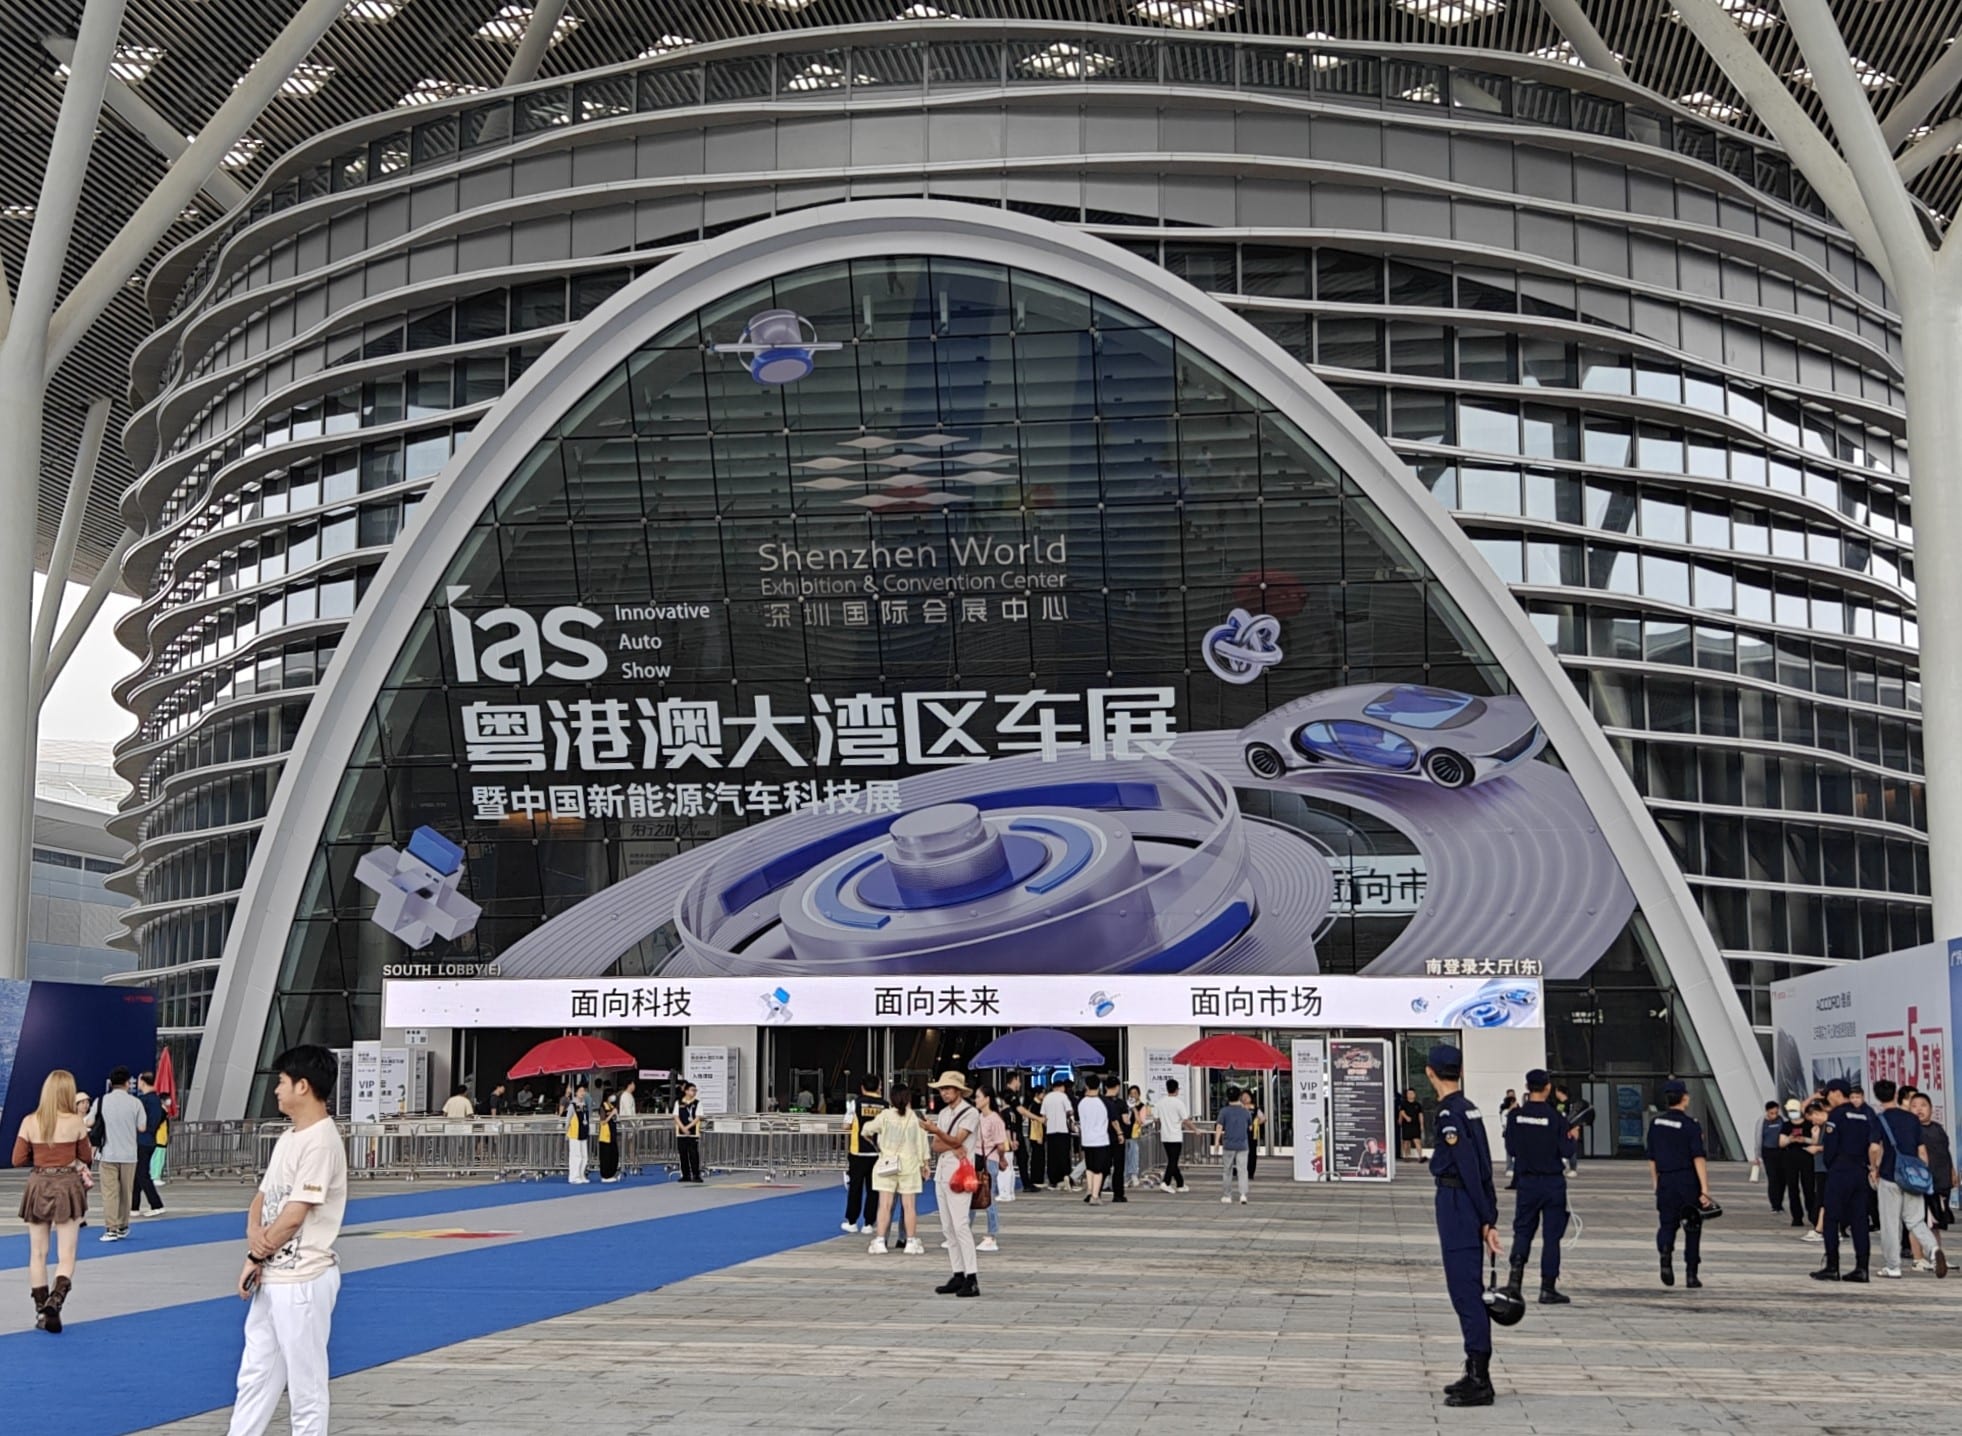 За первые пять месяцев 2024 года компания BYD продала 1,2713 миллиона новых энергетических автомобилей, что позволило ей стать лидером продаж в Китае. В свою очередь, компания Huawei поставила 4 июня 148 098 новых автомобилей и стала самым продаваемы